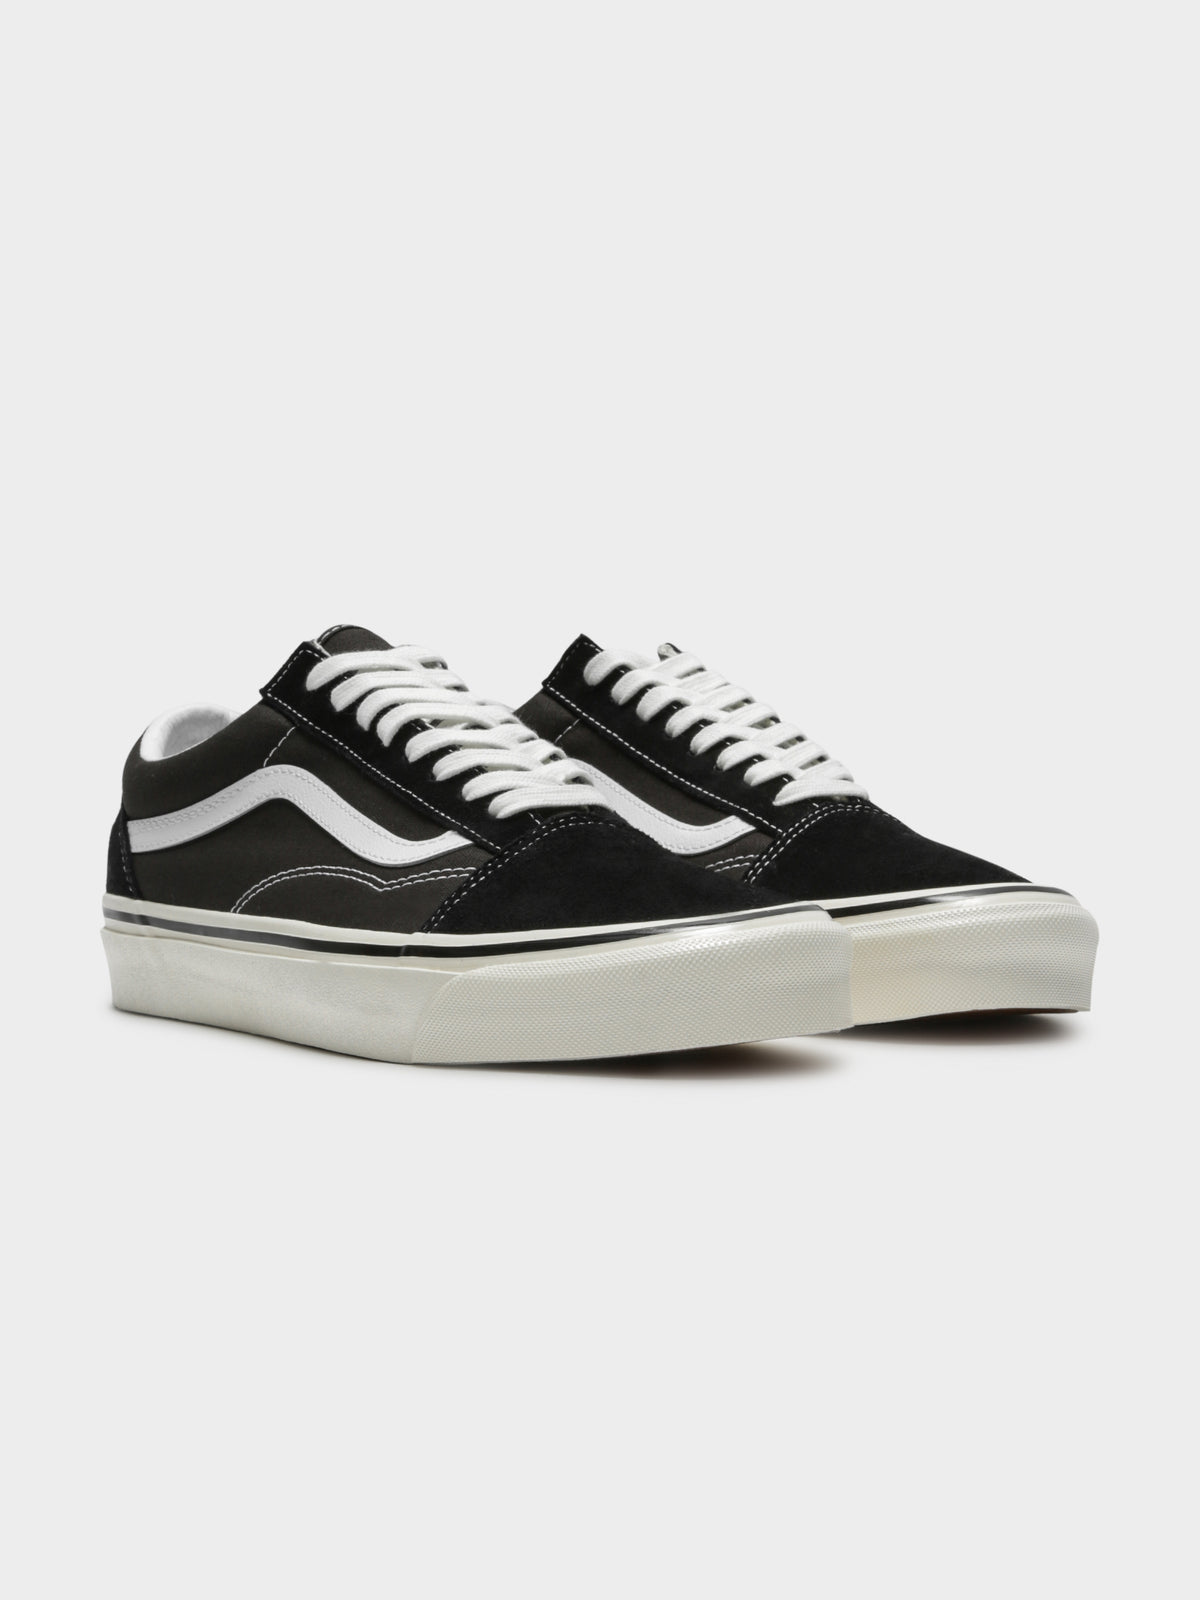 Unisex Old Skool 36 Dx Sneakers in Black &amp; True White